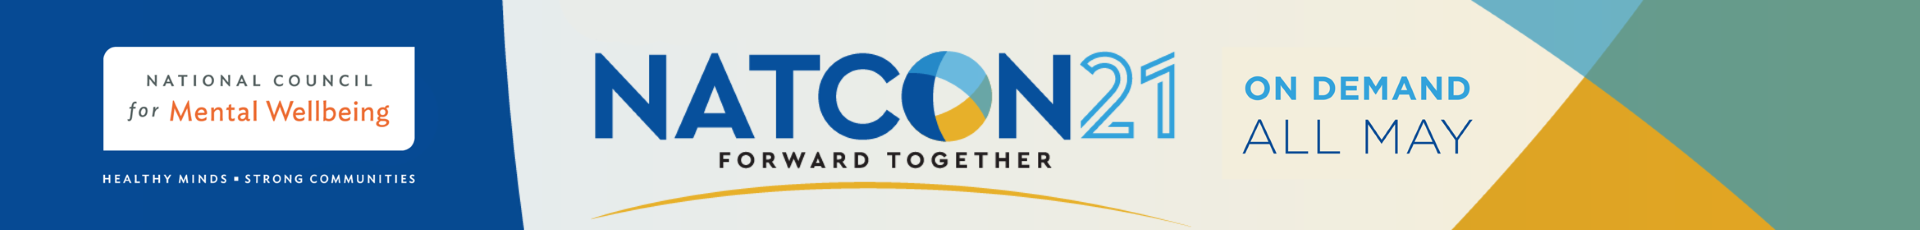 NatCon21 Event Banner